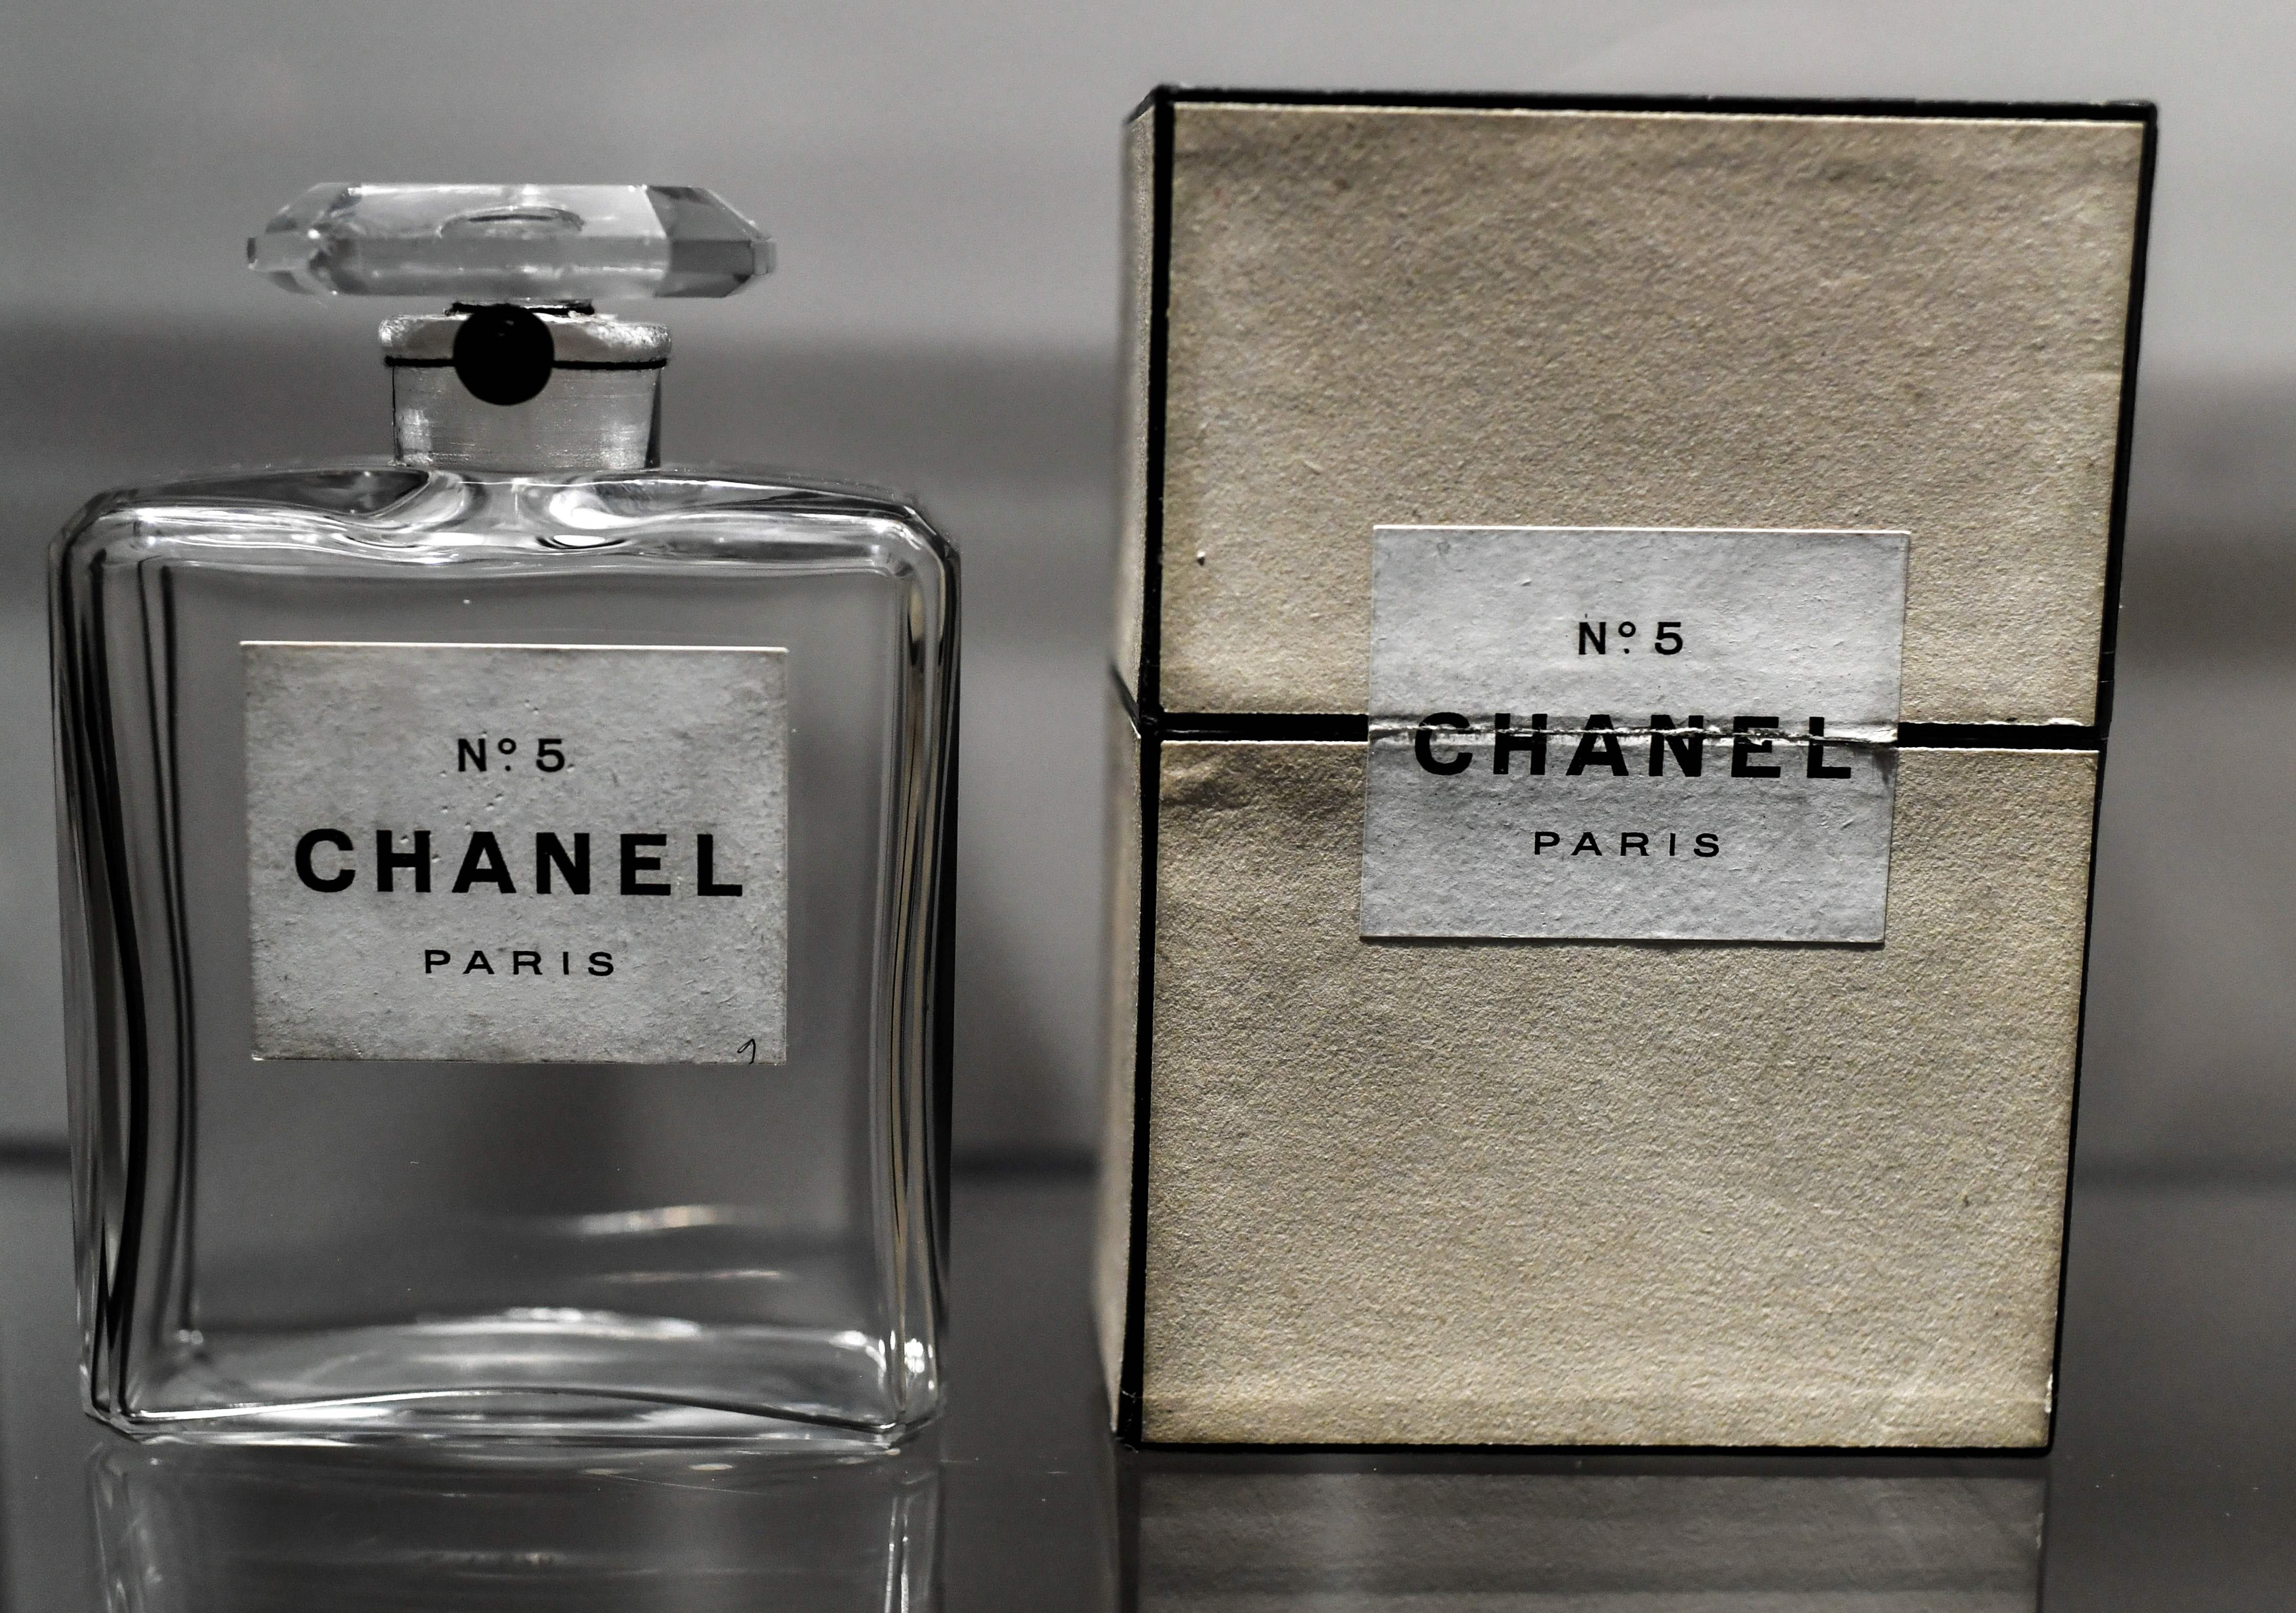 Chanel No 5 Parfum Chanel fragancia - una fragancia para Mujeres 1921